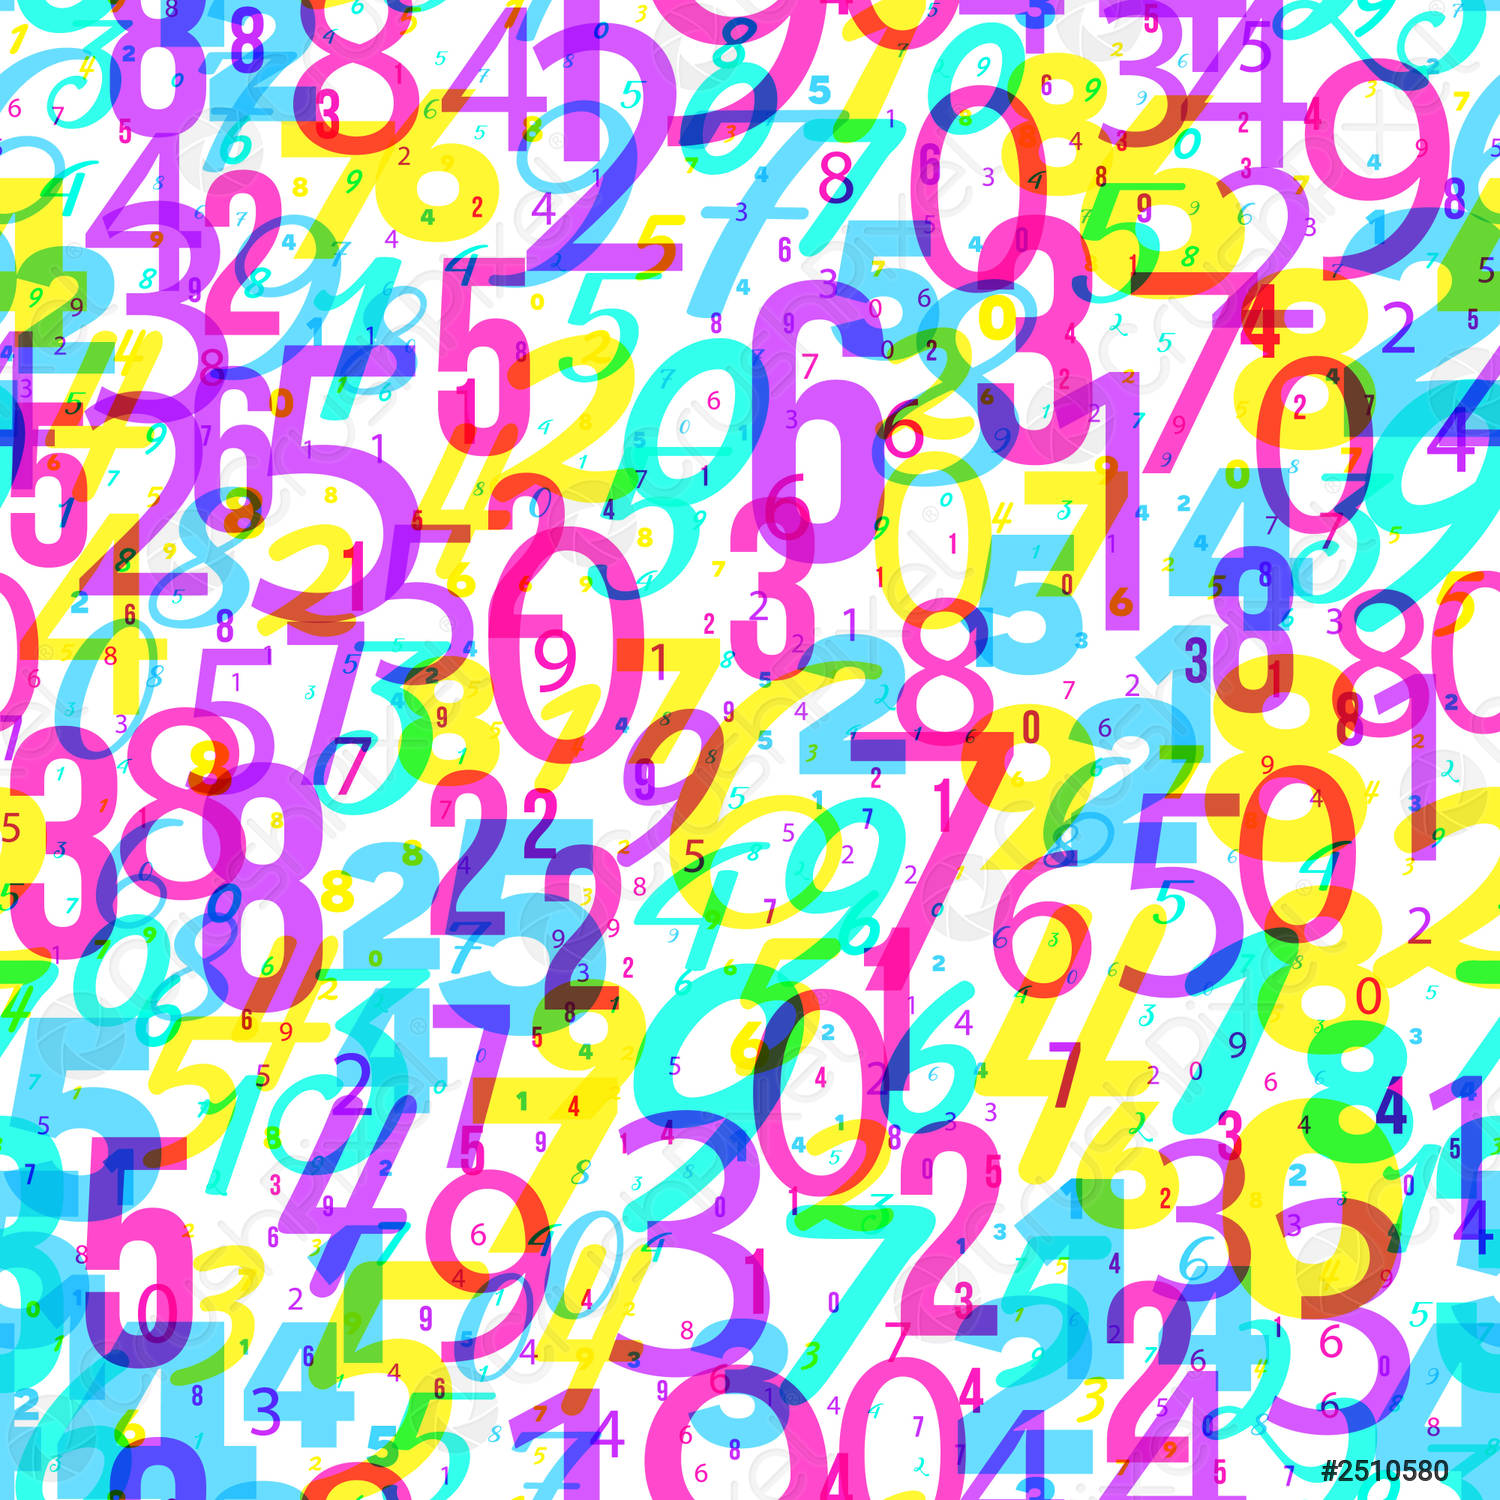 تصویر از اعداد رنگارنگ برای پروفایل دانشجو های رشته ریاضی